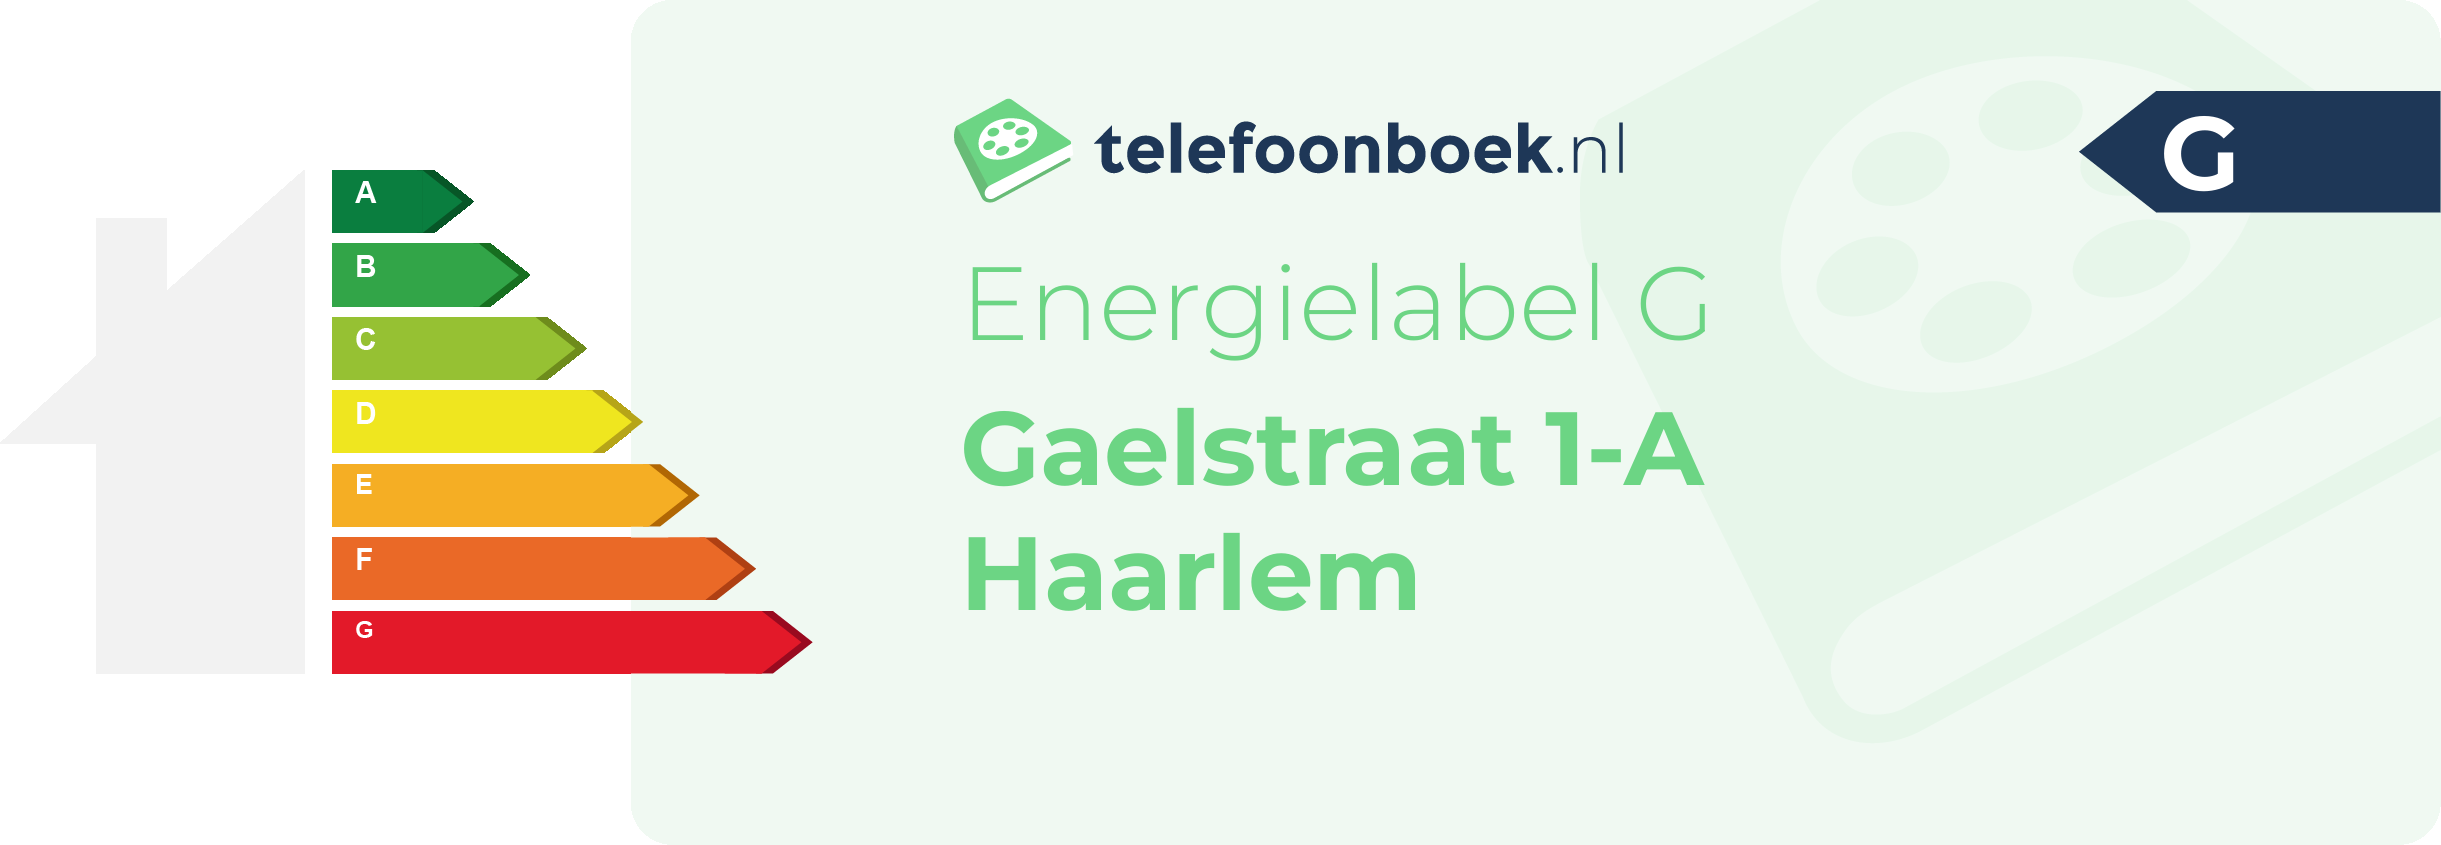 Energielabel Gaelstraat 1-A Haarlem